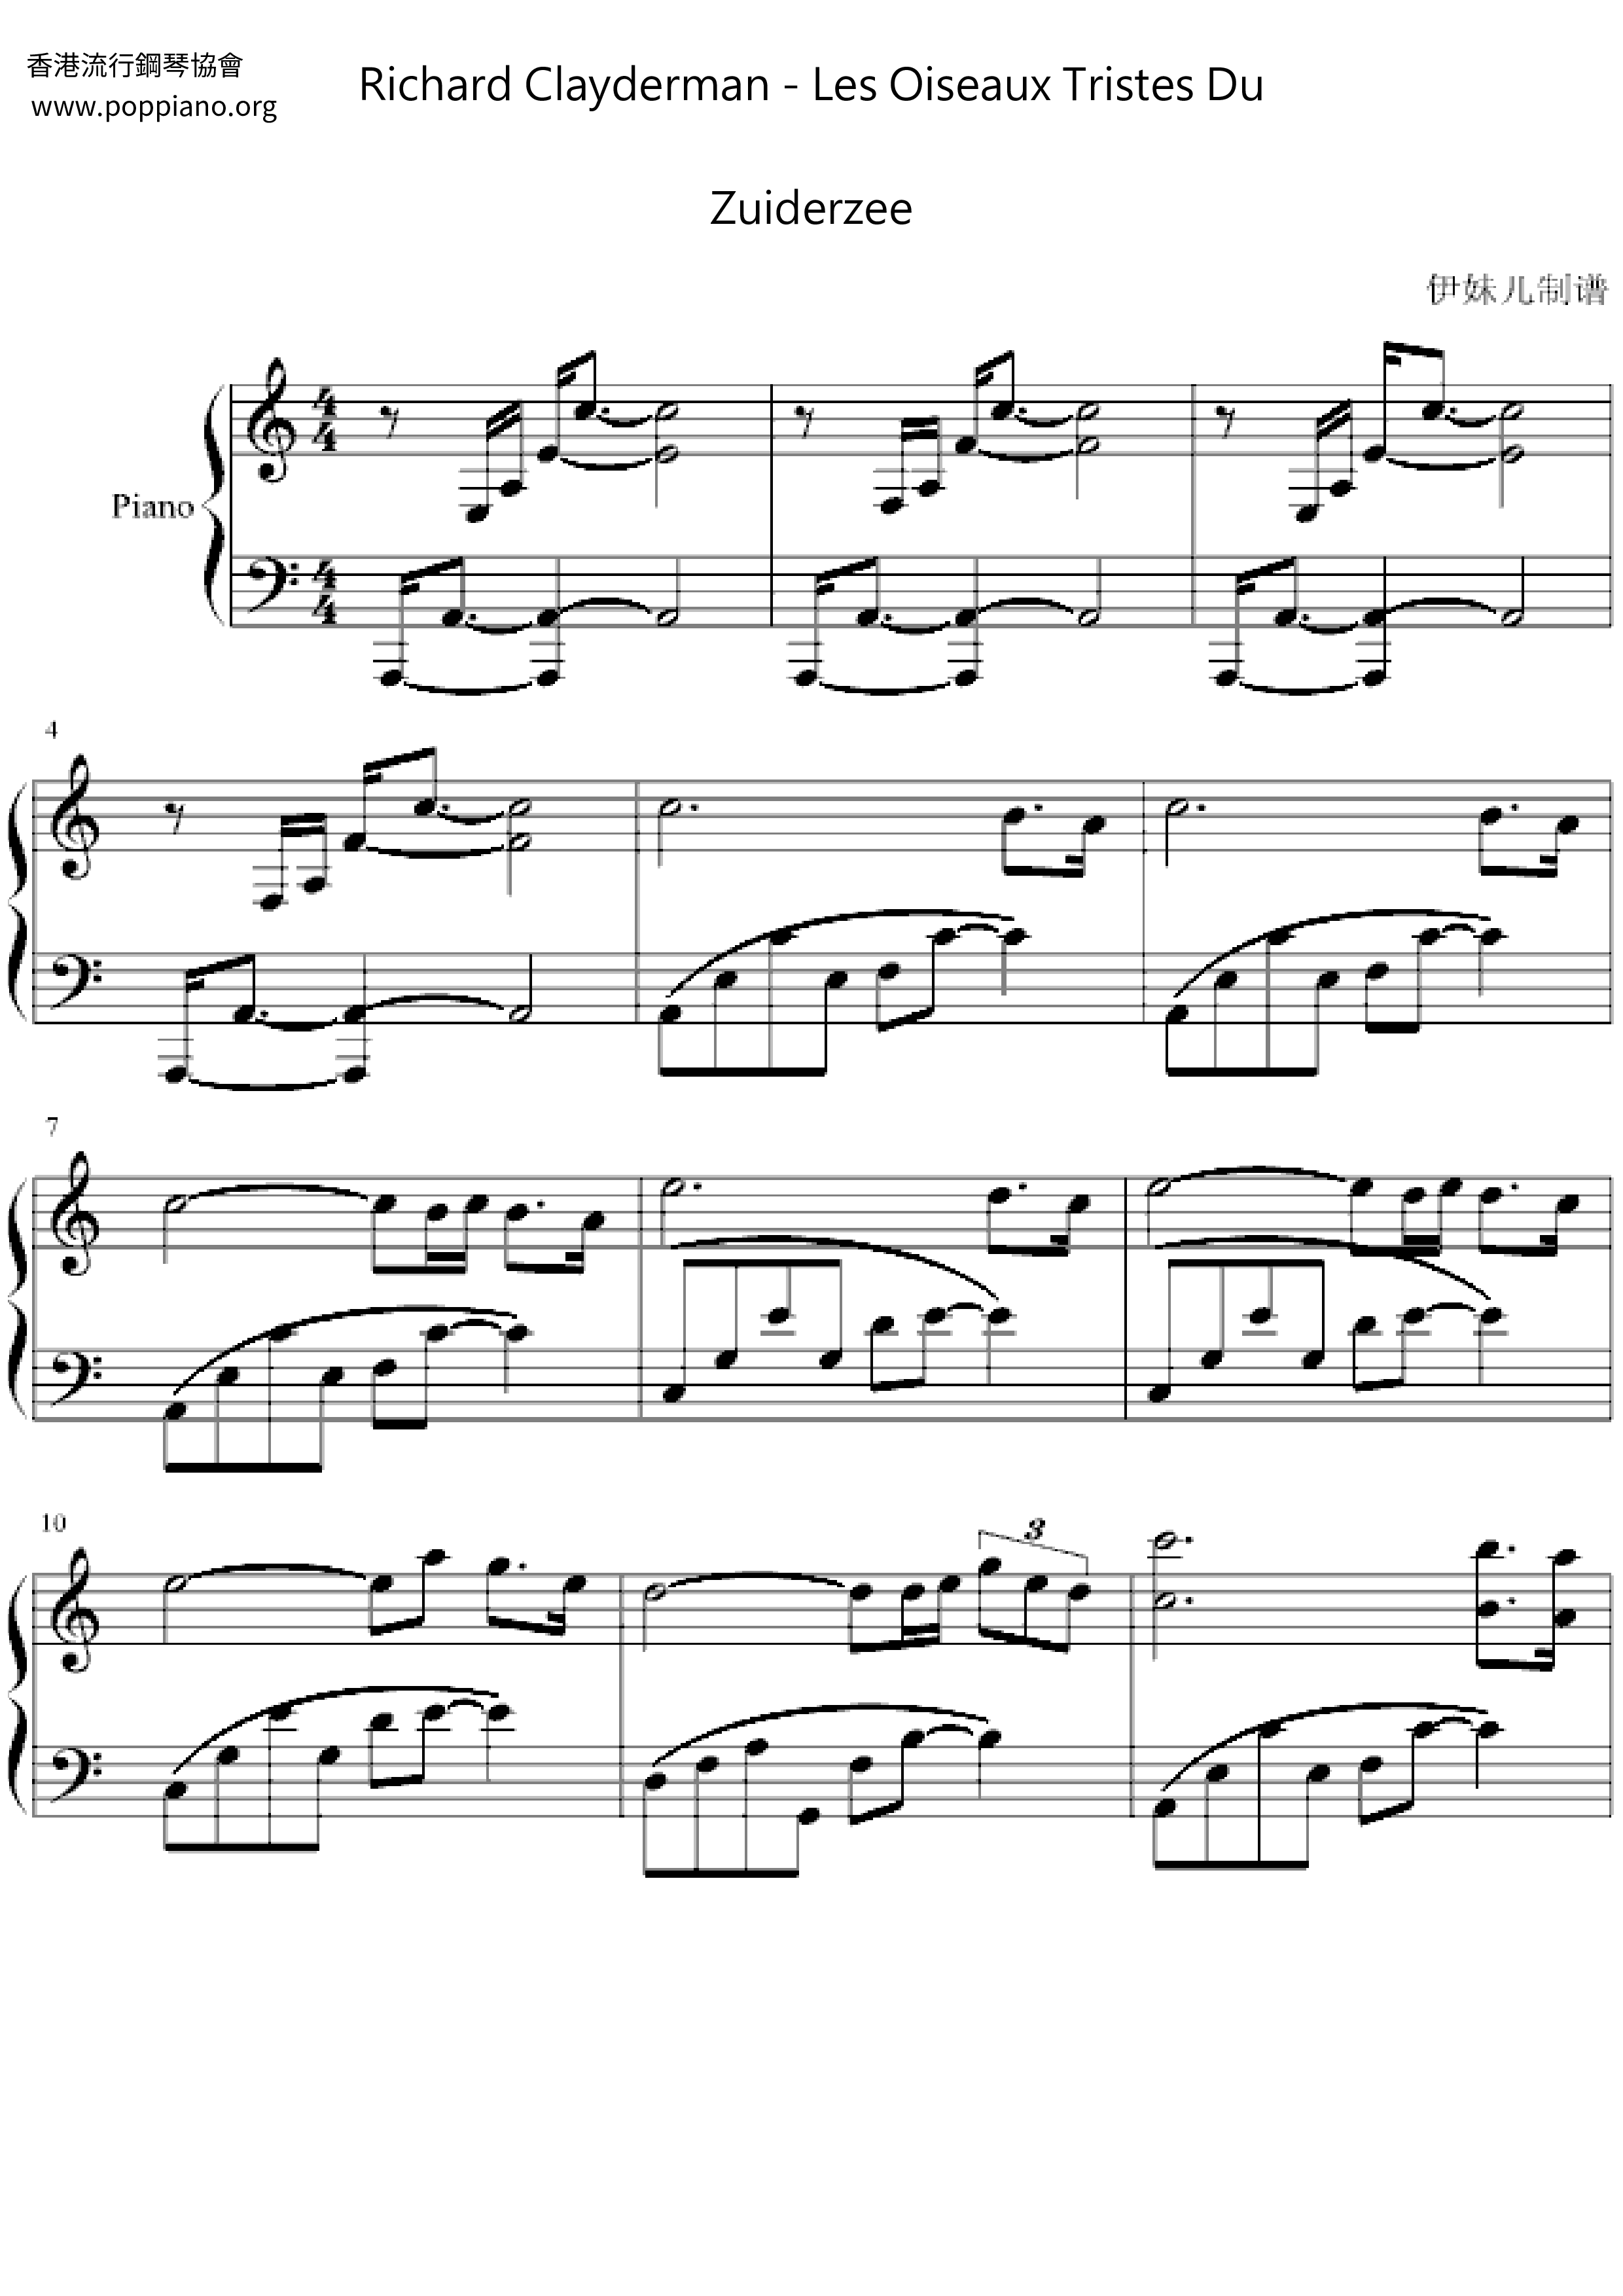 Les Oiseaux Tristes Du Zuiderzeeピアノ譜